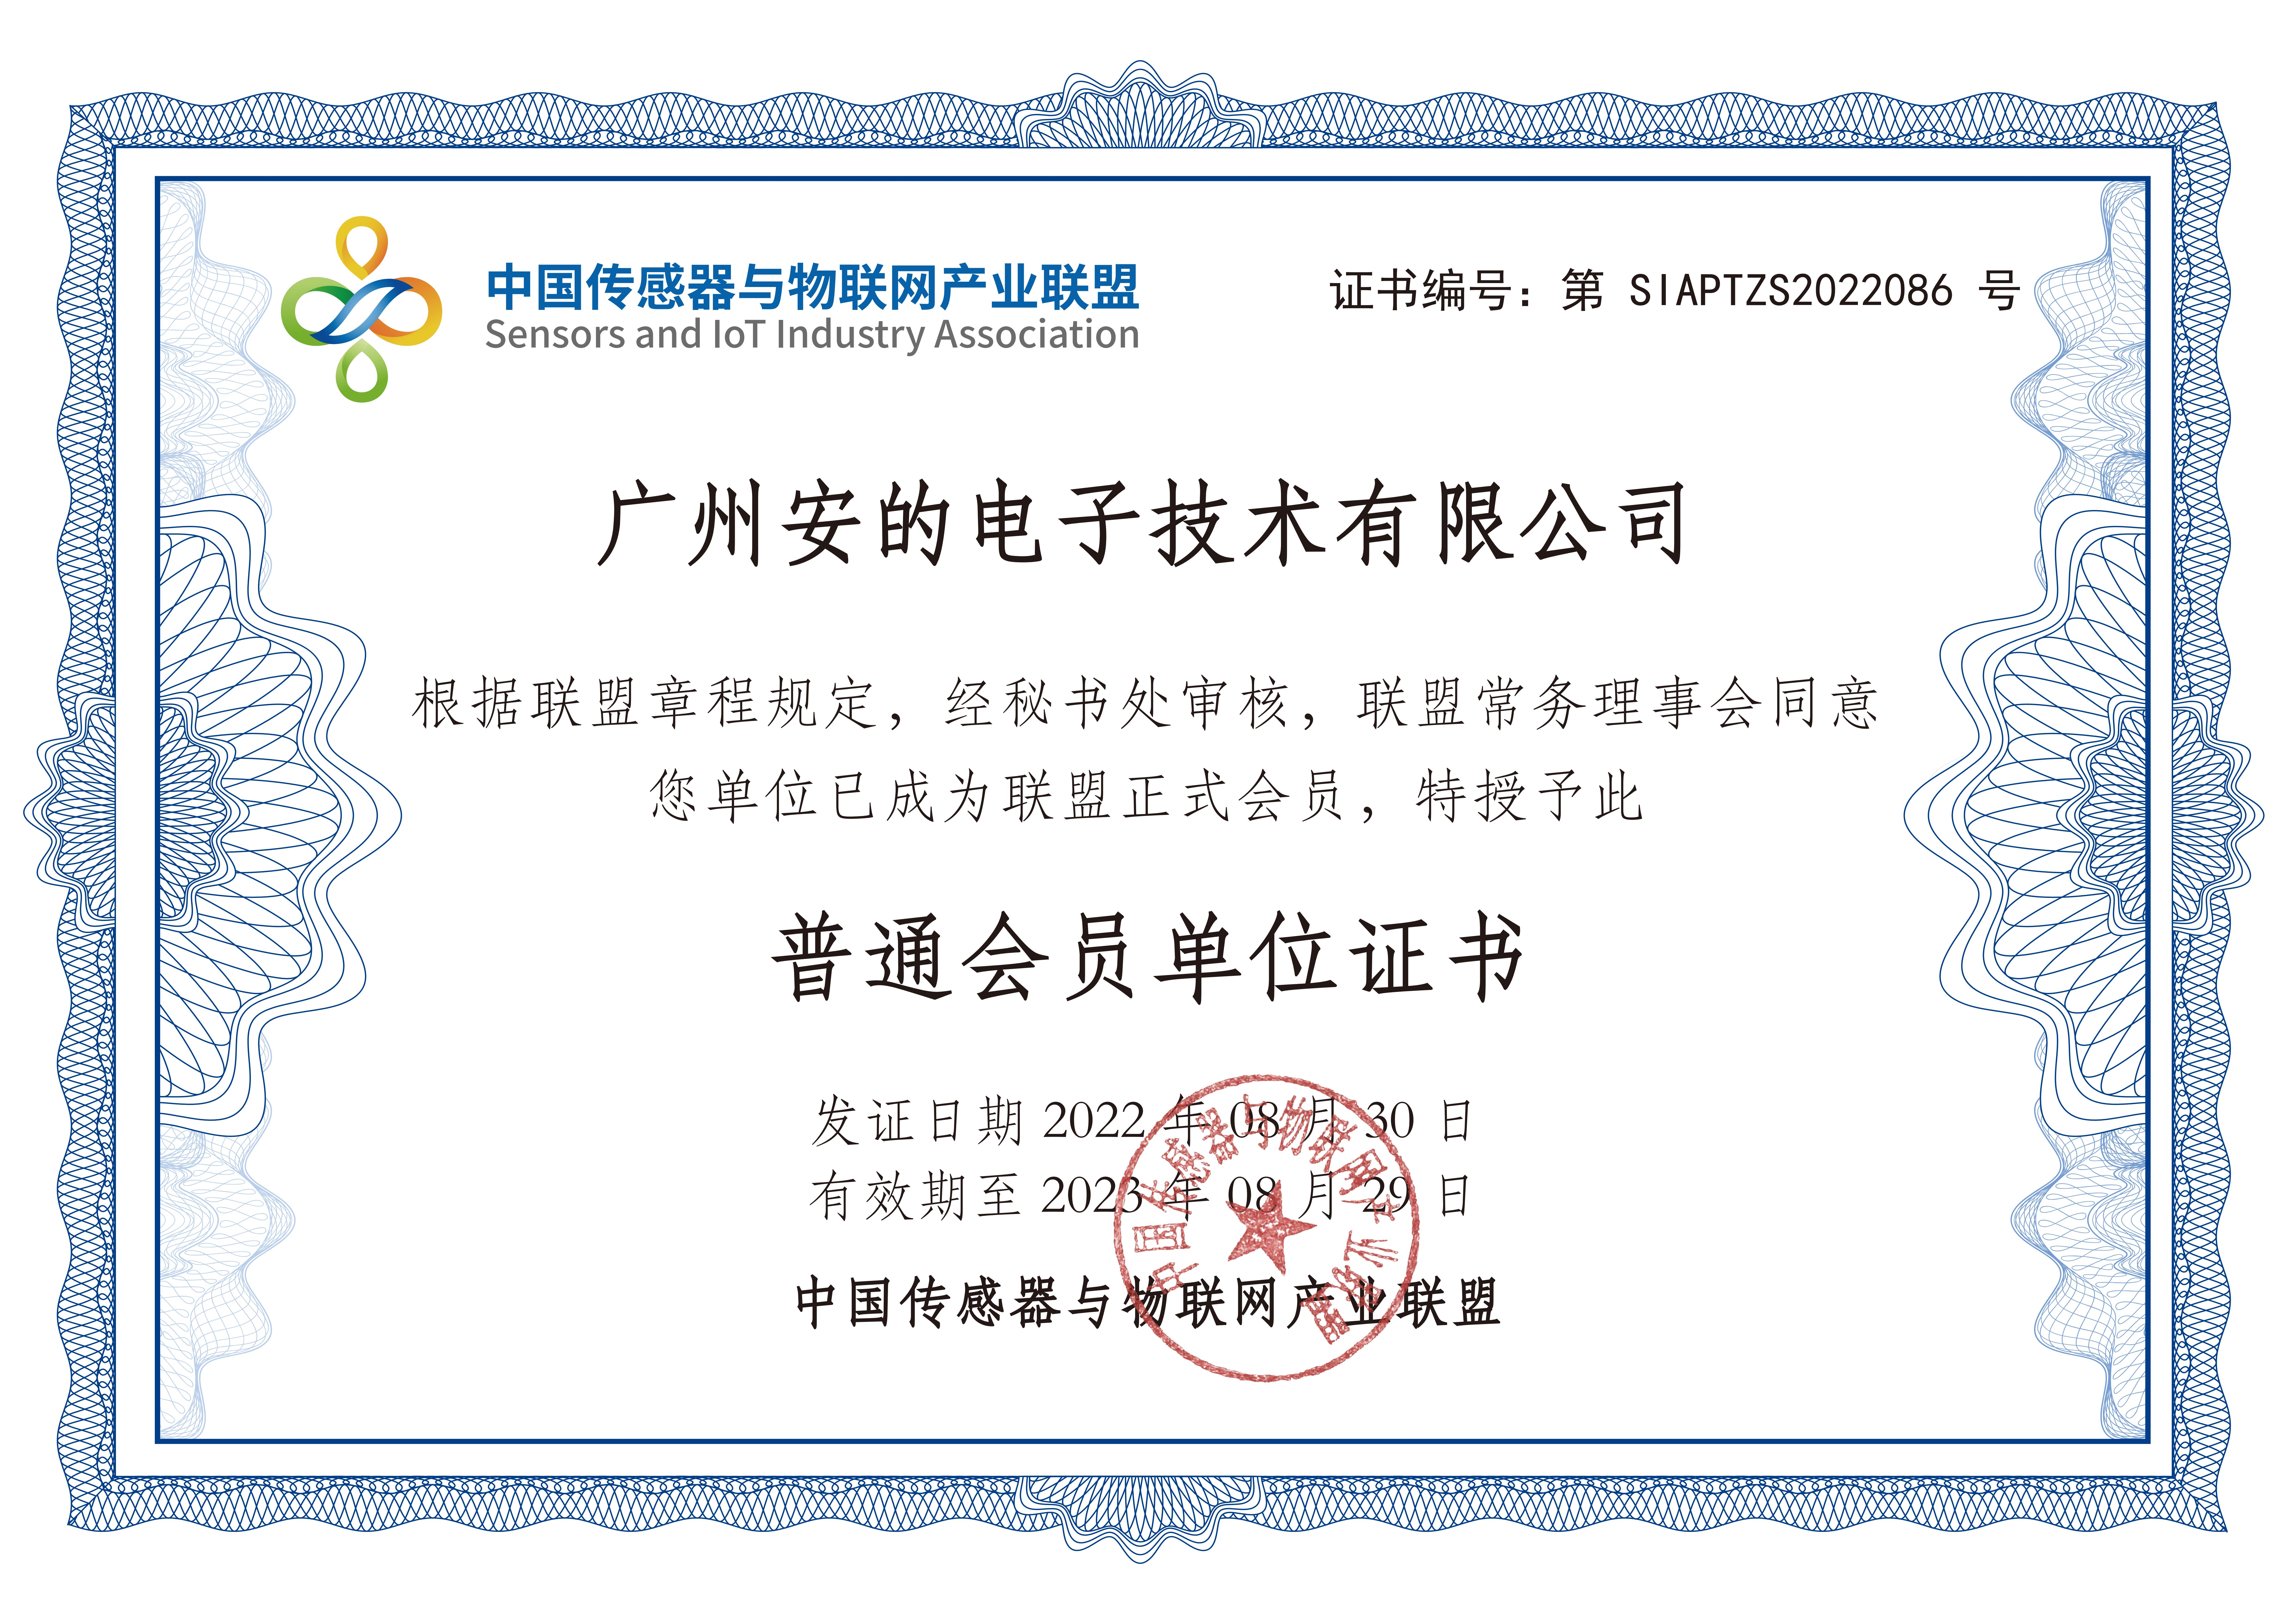 我司正式获批加入“中国传感器与物联网产业联盟”